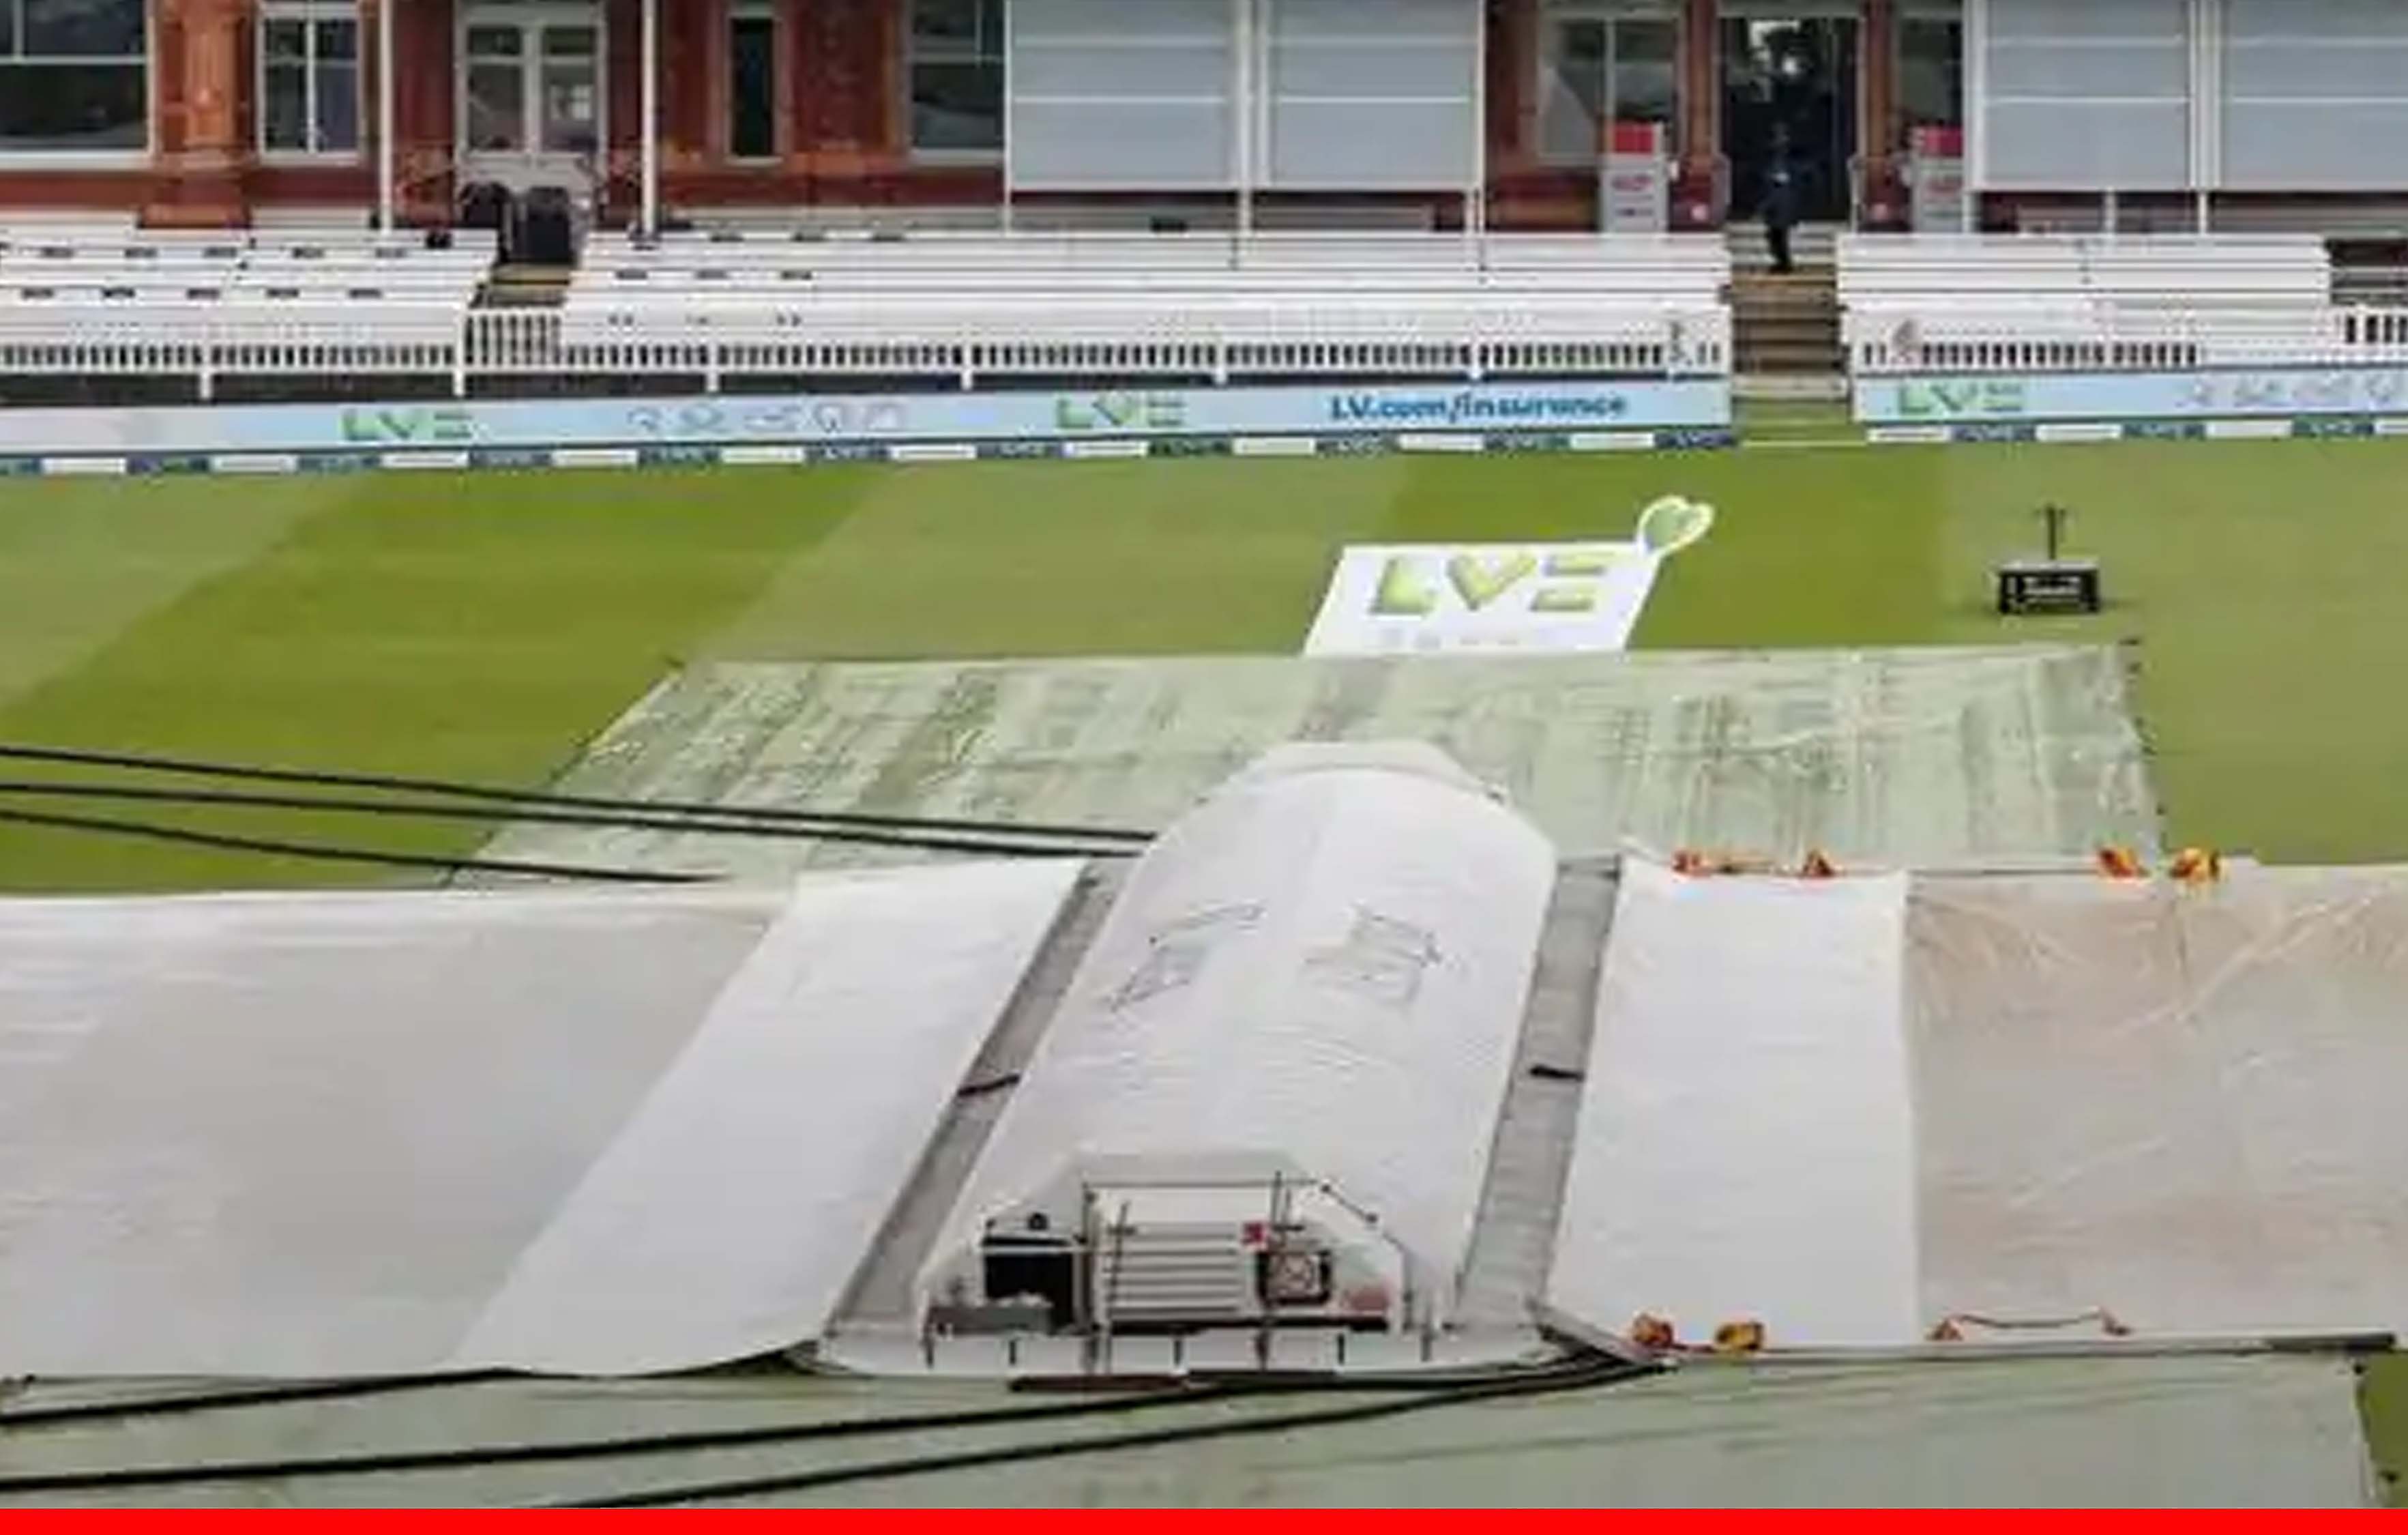 तीसरे दिन बारिश ने बिगाड़ा खेल, ड्रॉ की तरफ बढ़ा इंग्लैंड-न्यूजीलैंड के बीच पहला टेस्ट मैच